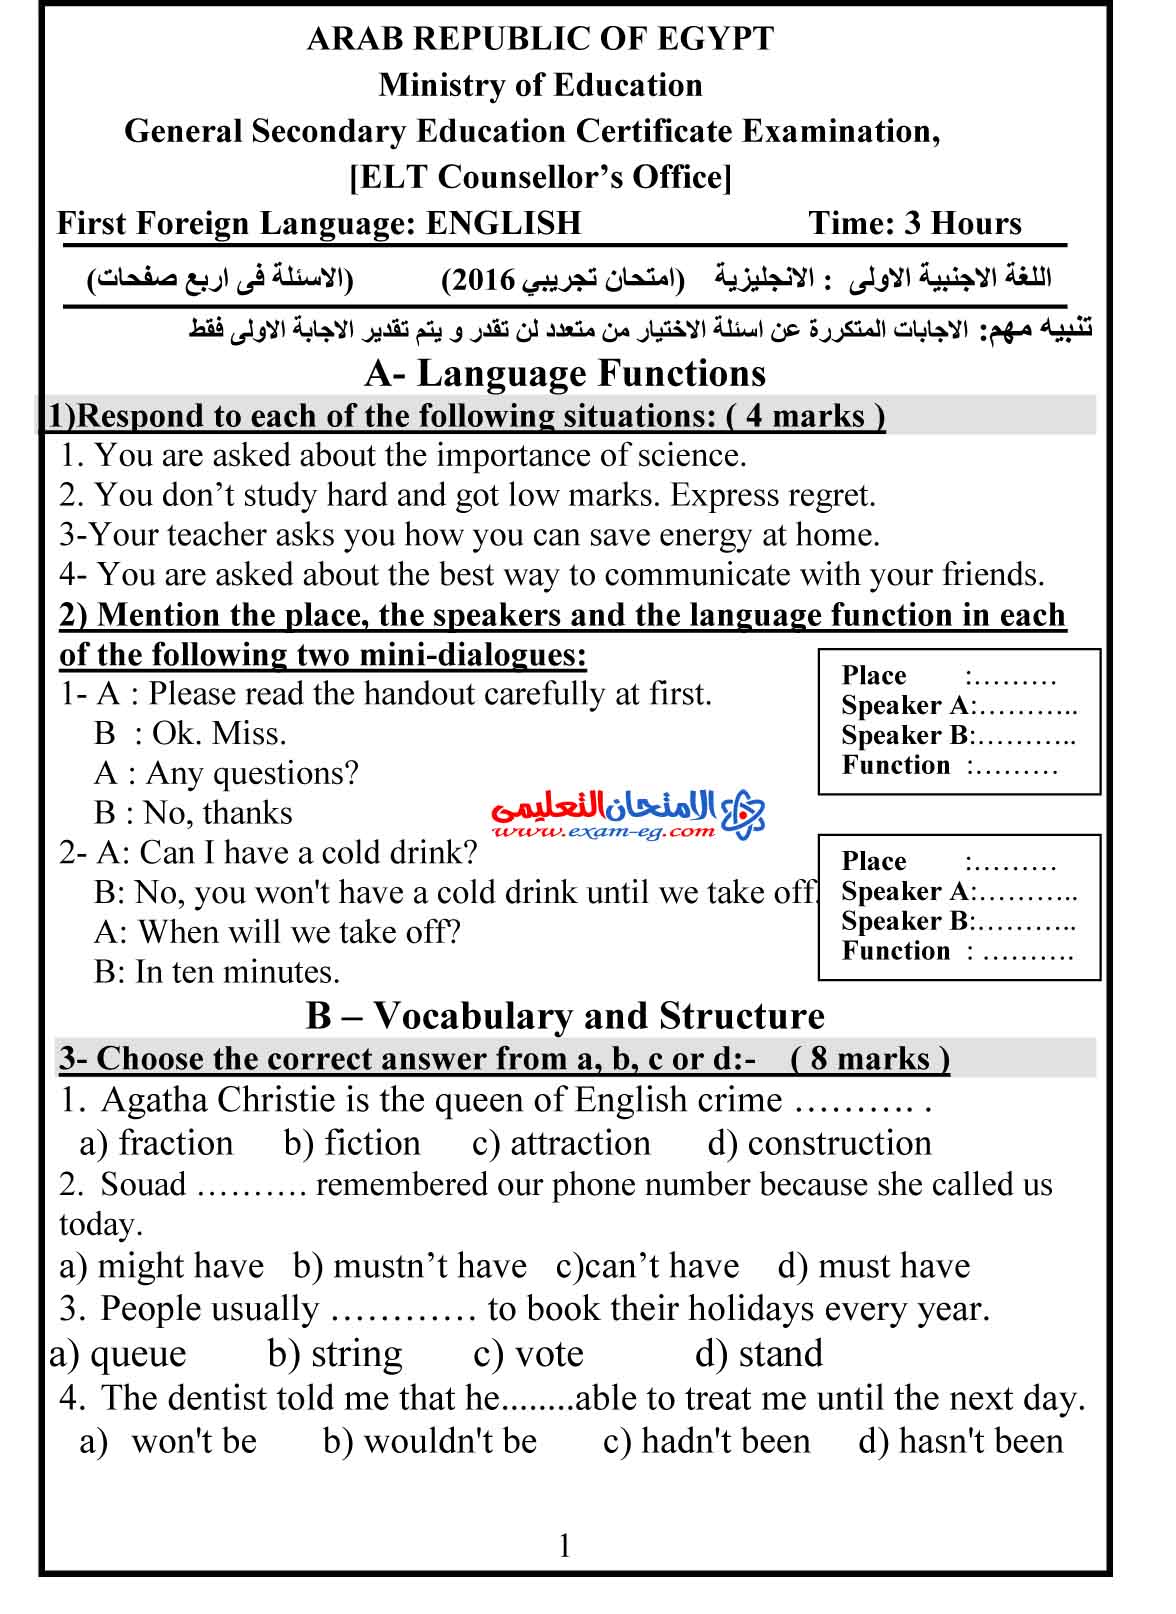 امتحان لغة انجليزية 2 - الامتحان التعليمى-1